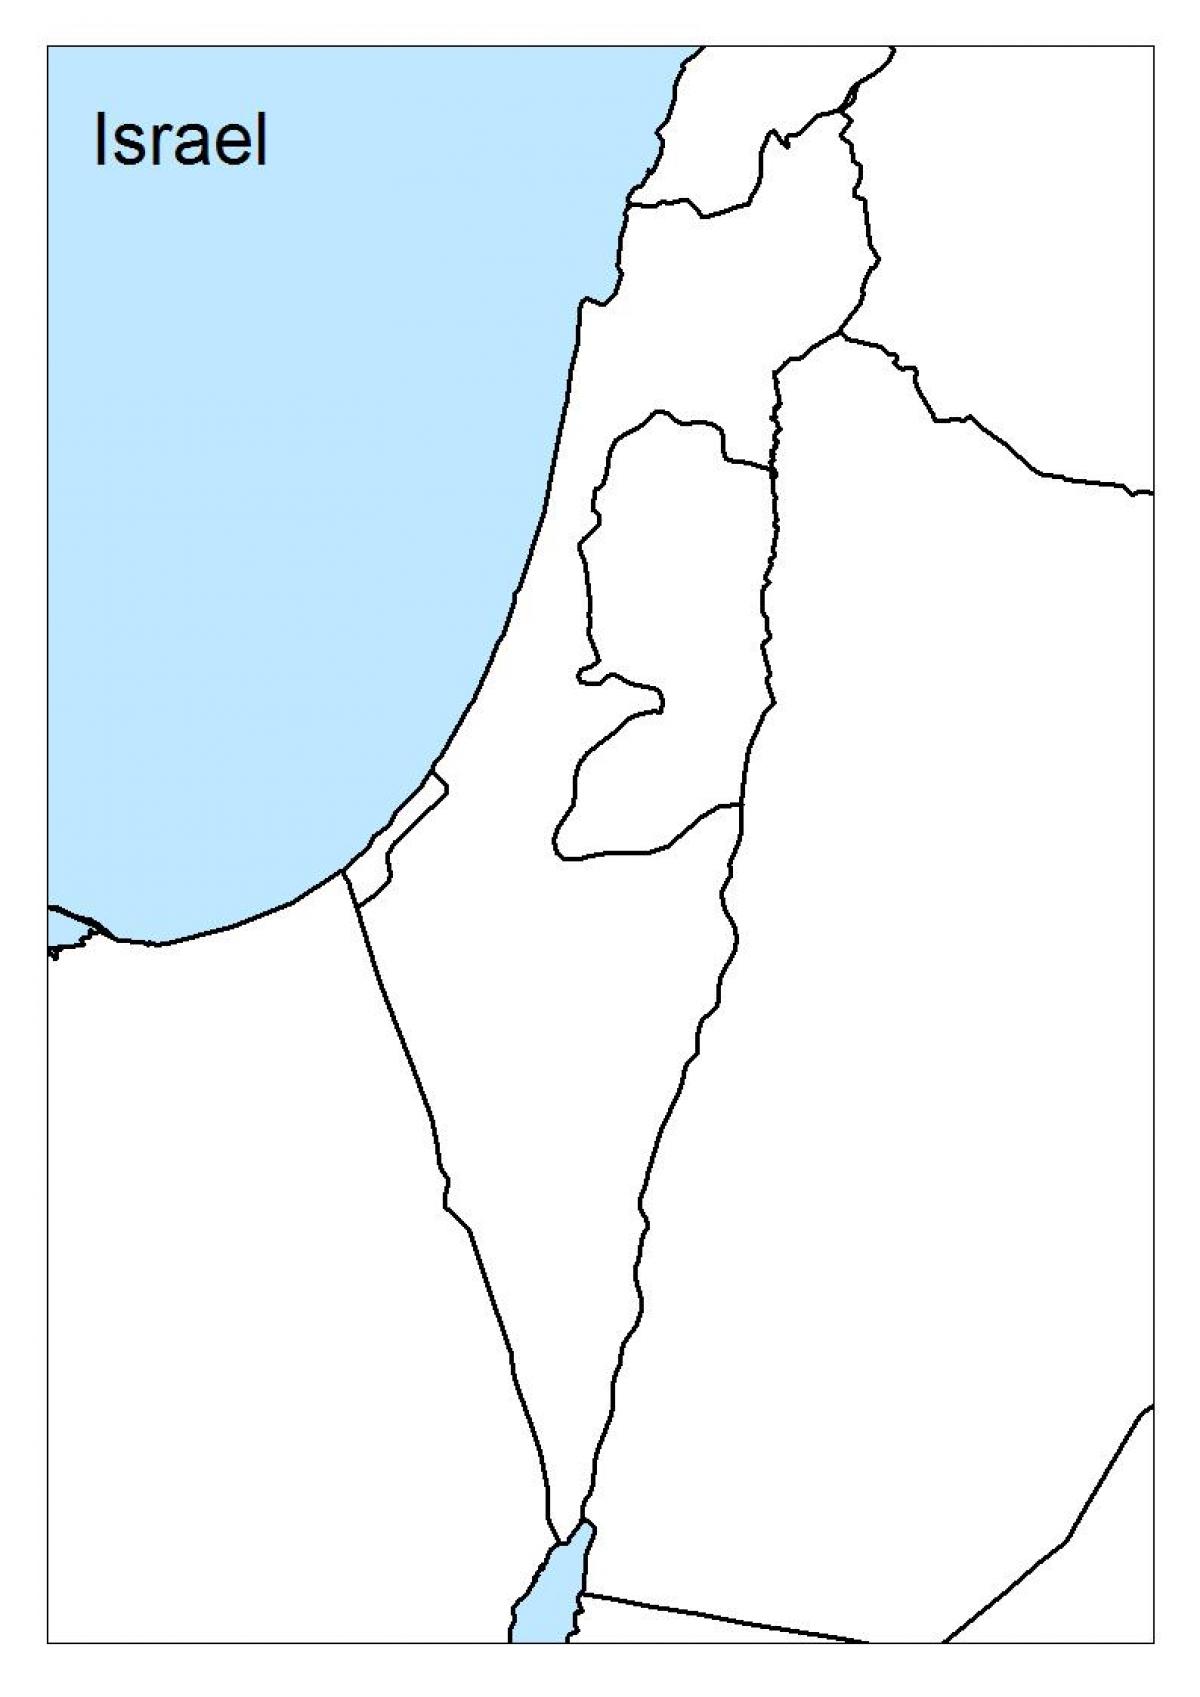 नक्शे के रिक्त इसराइल